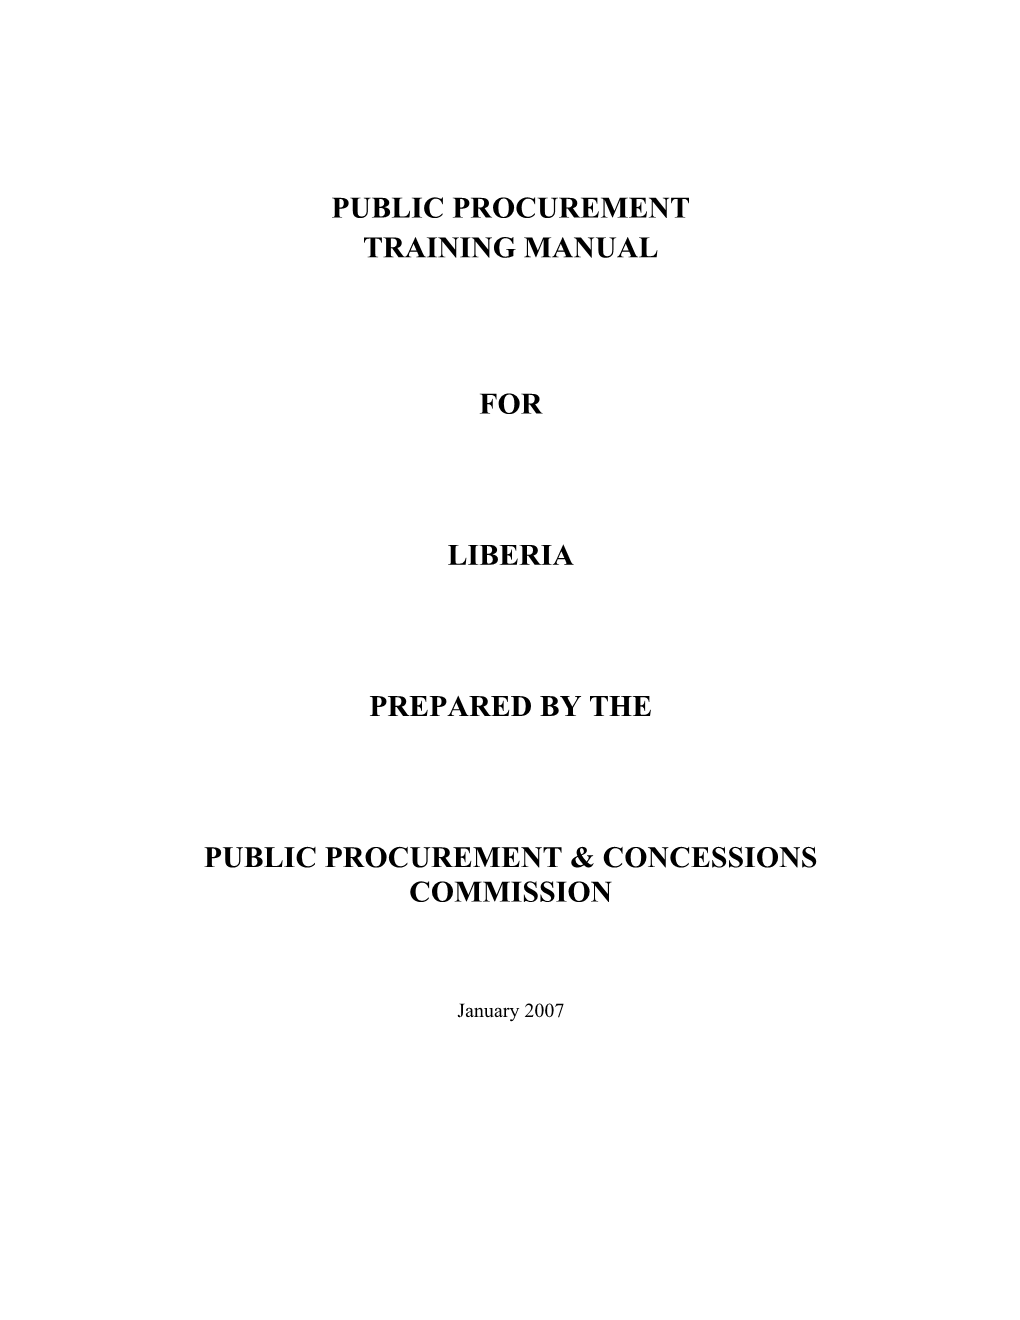 Public Procurement & Concessions Commission